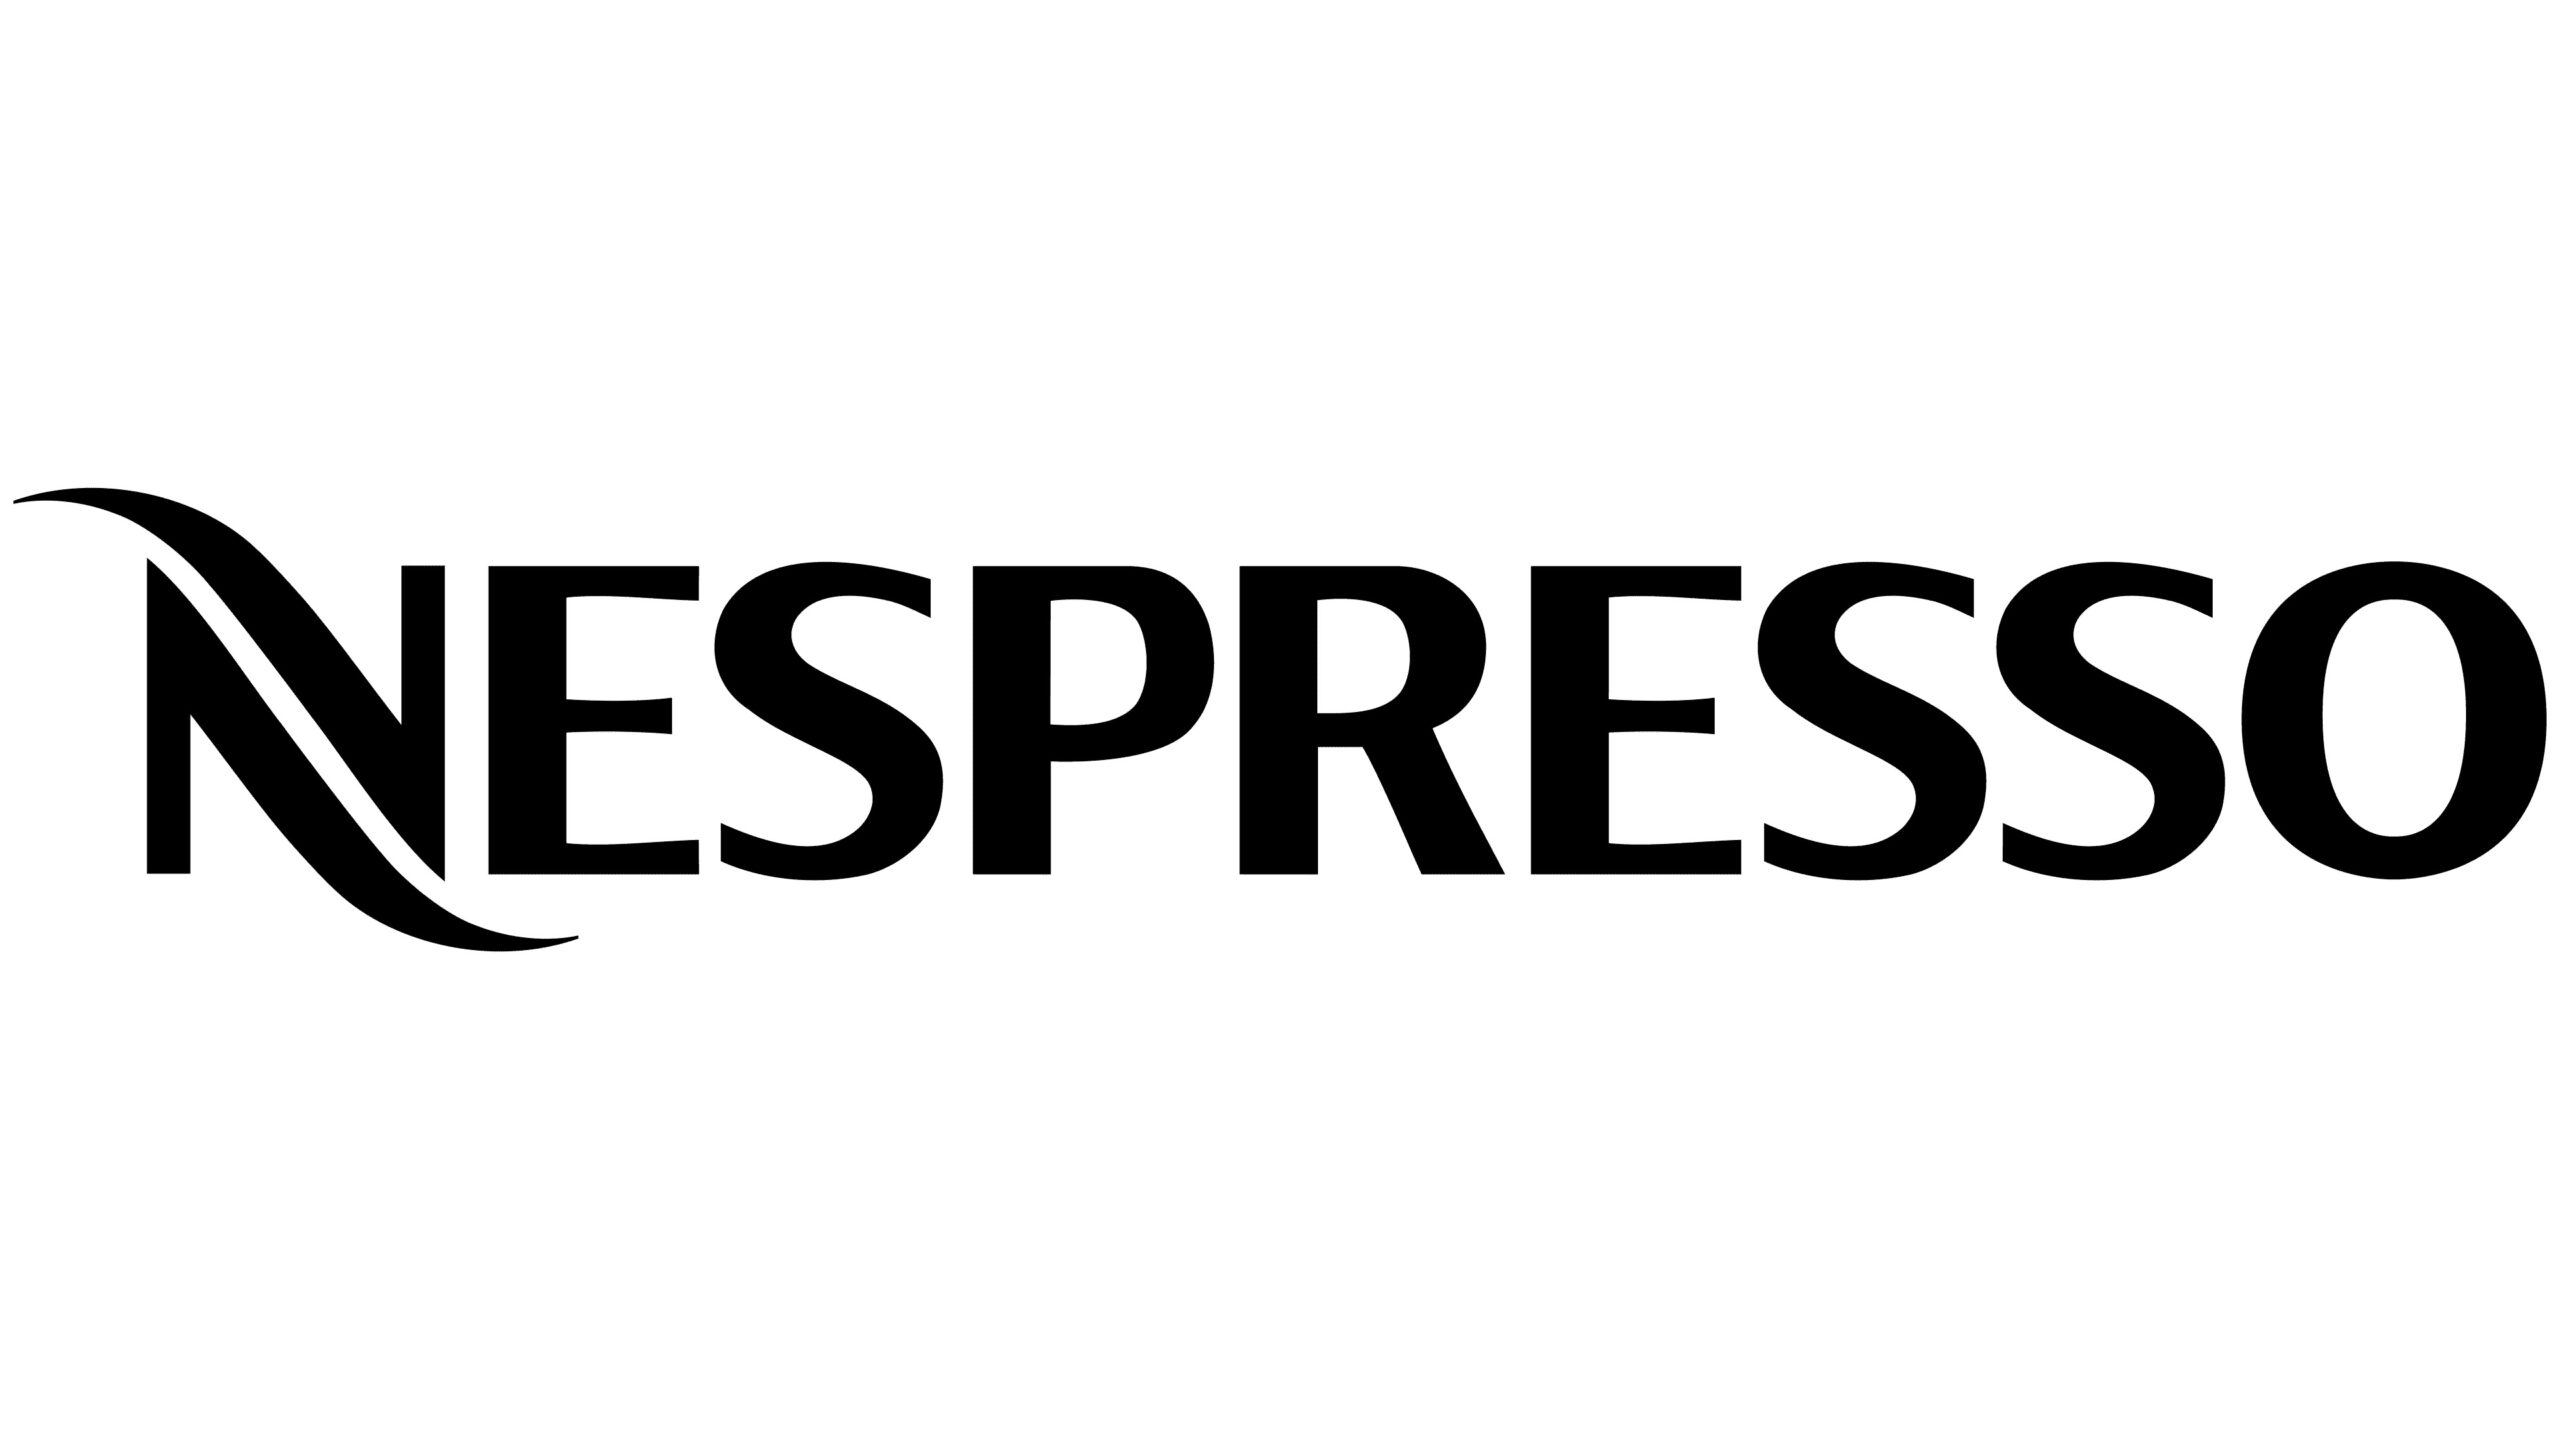 Nespresso B Corp